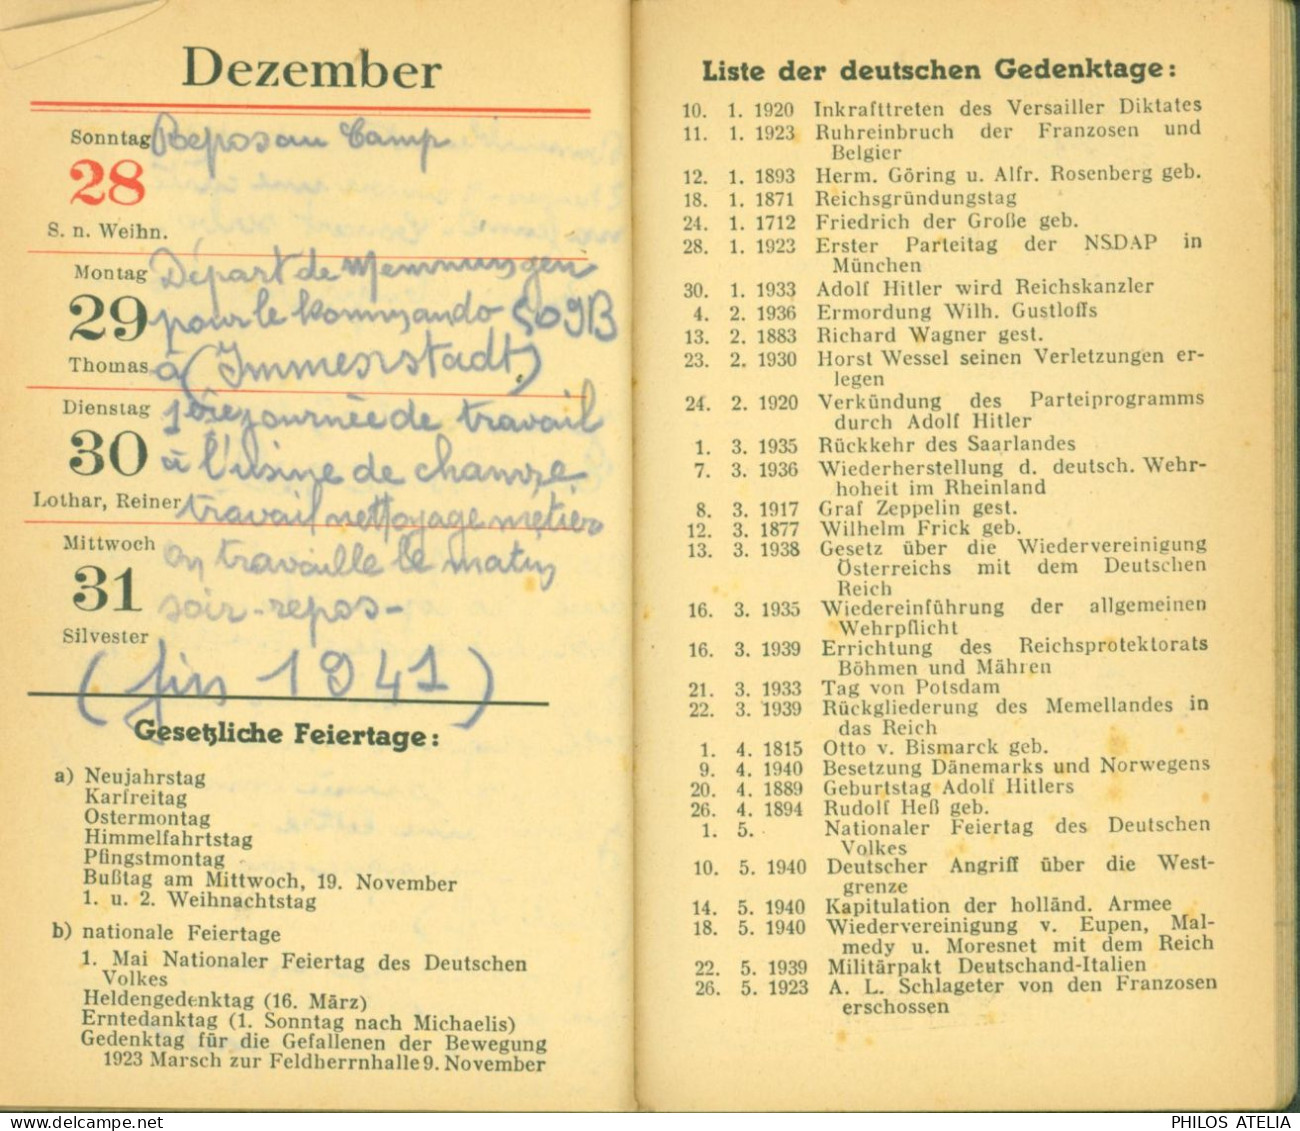 Guerre 40 Almanach Notiz Kalender 1941 Louis Serra De Port Vendres Prisonnier Stalag VIIB Memmingen Pro Pétain - Calendriers